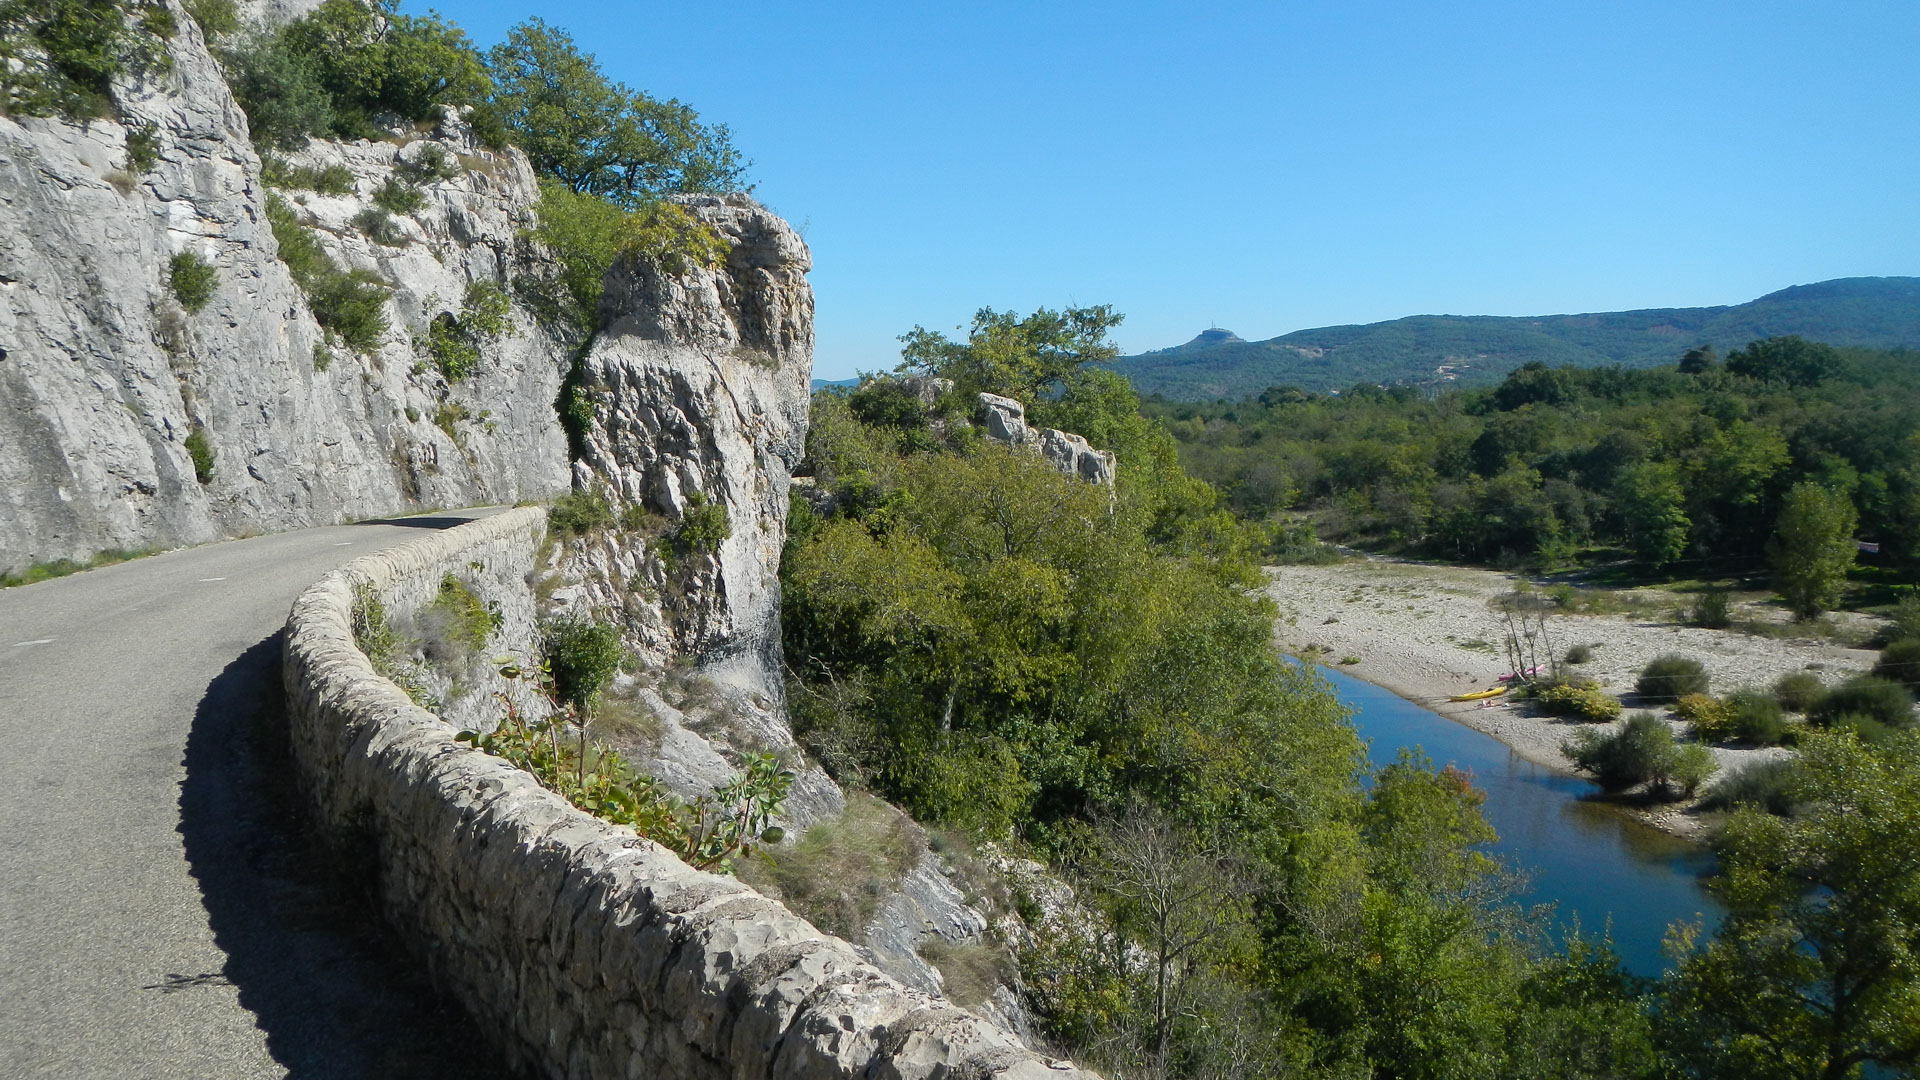 à vélo, route en balcon au-dessus des gorges en Ardèche